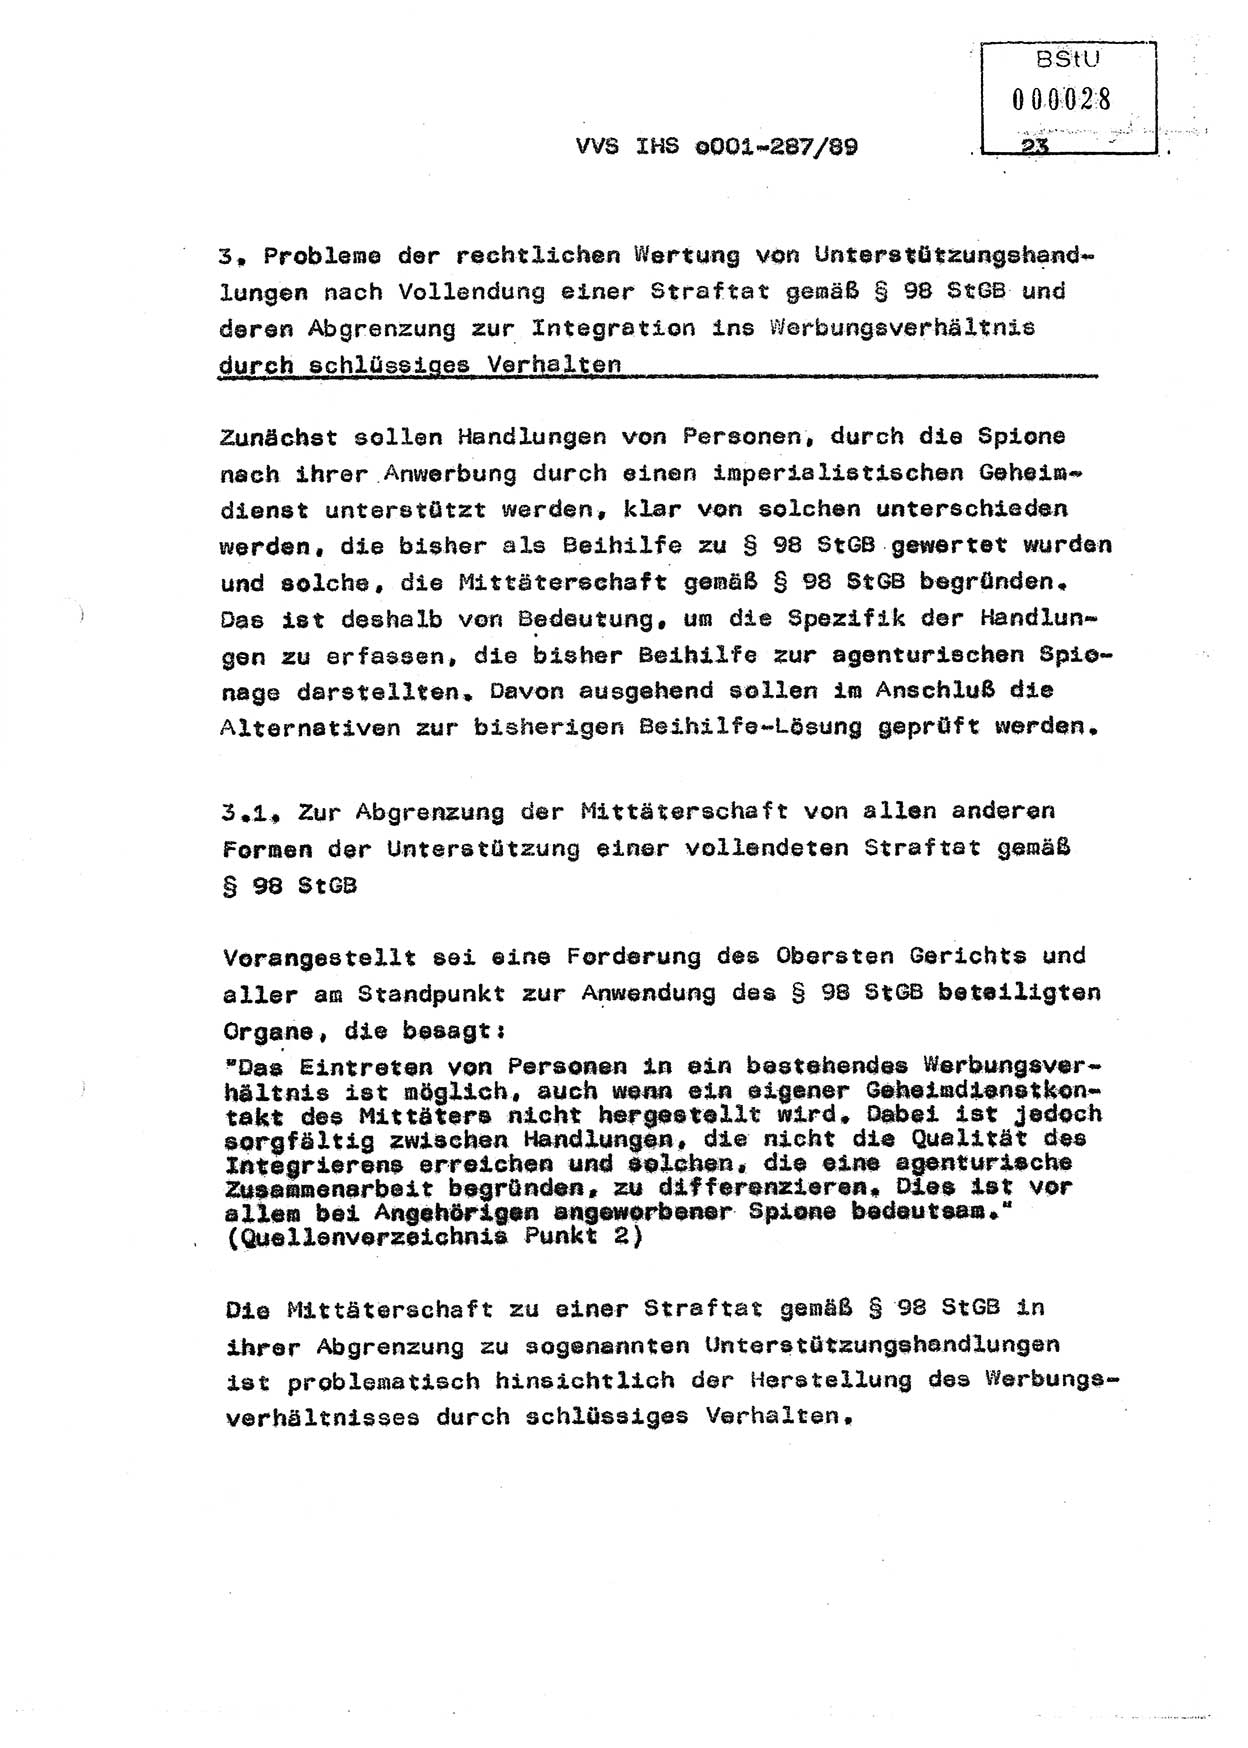 Diplomarbeit, Offiziersschüler Harald Wabst (HA Ⅸ/1), Ministerium für Staatssicherheit (MfS) [Deutsche Demokratische Republik (DDR)], Juristische Hochschule (JHS), Vertrauliche Verschlußsache (VVS) o001-287/89, Potsdam 1989, Seite 23 (Dipl.-Arb. MfS DDR JHS VVS o001-287/89 1989, S. 23)